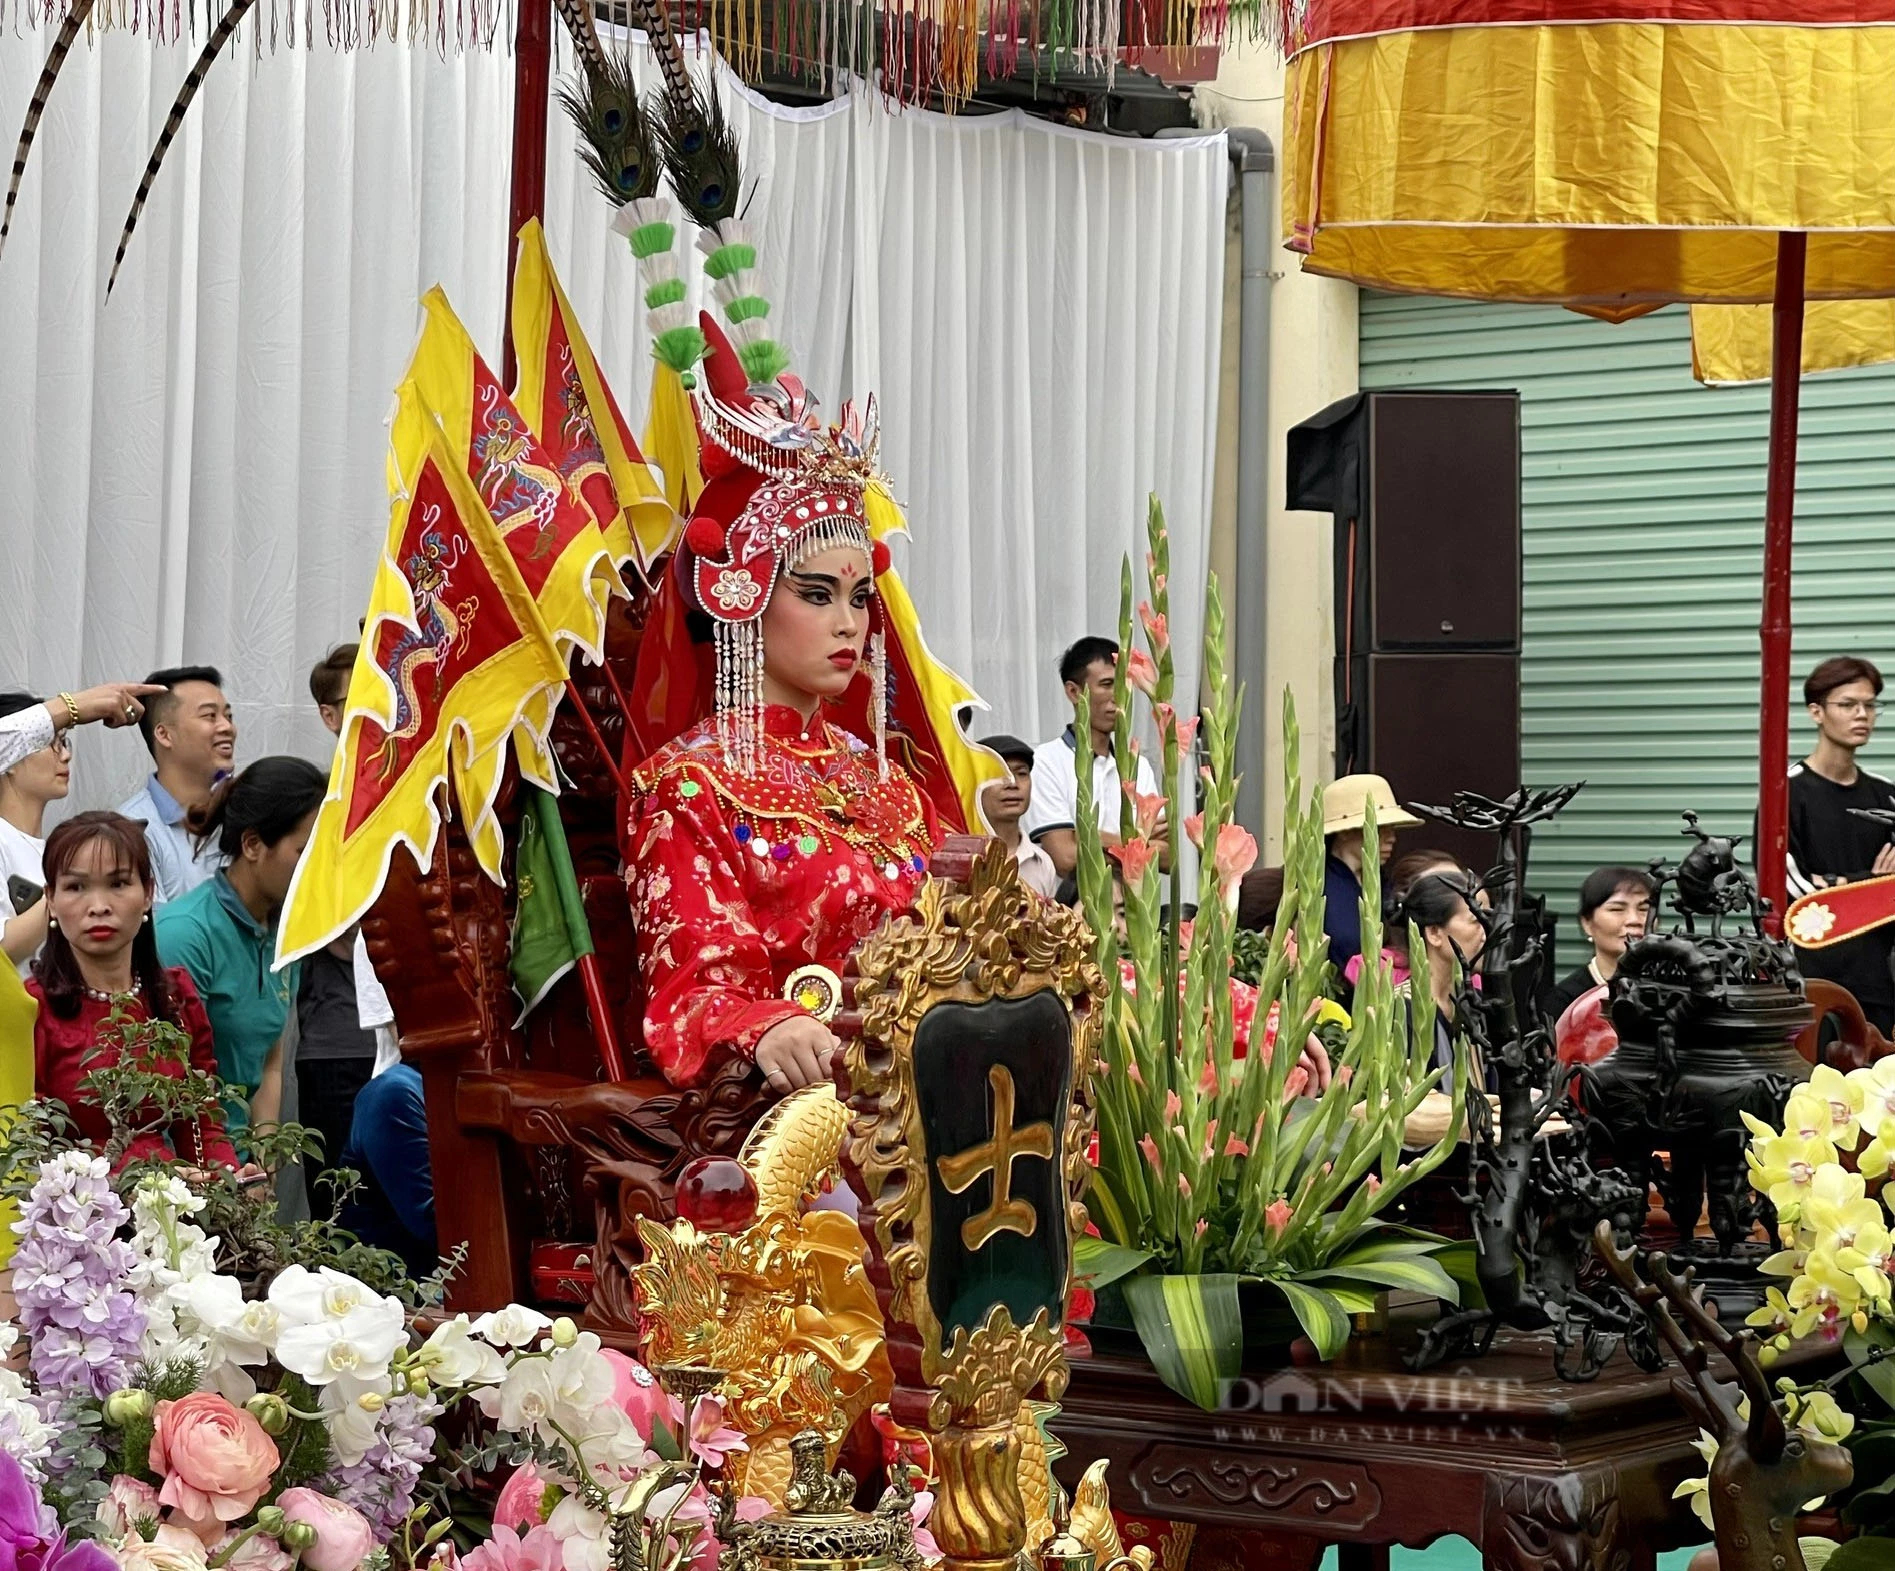 Độc đáo hình ảnh tướng bà trong môn cờ người tại lễ hội làng Giang Xá (Hoài Đức, Hà Nội)- Ảnh 4.